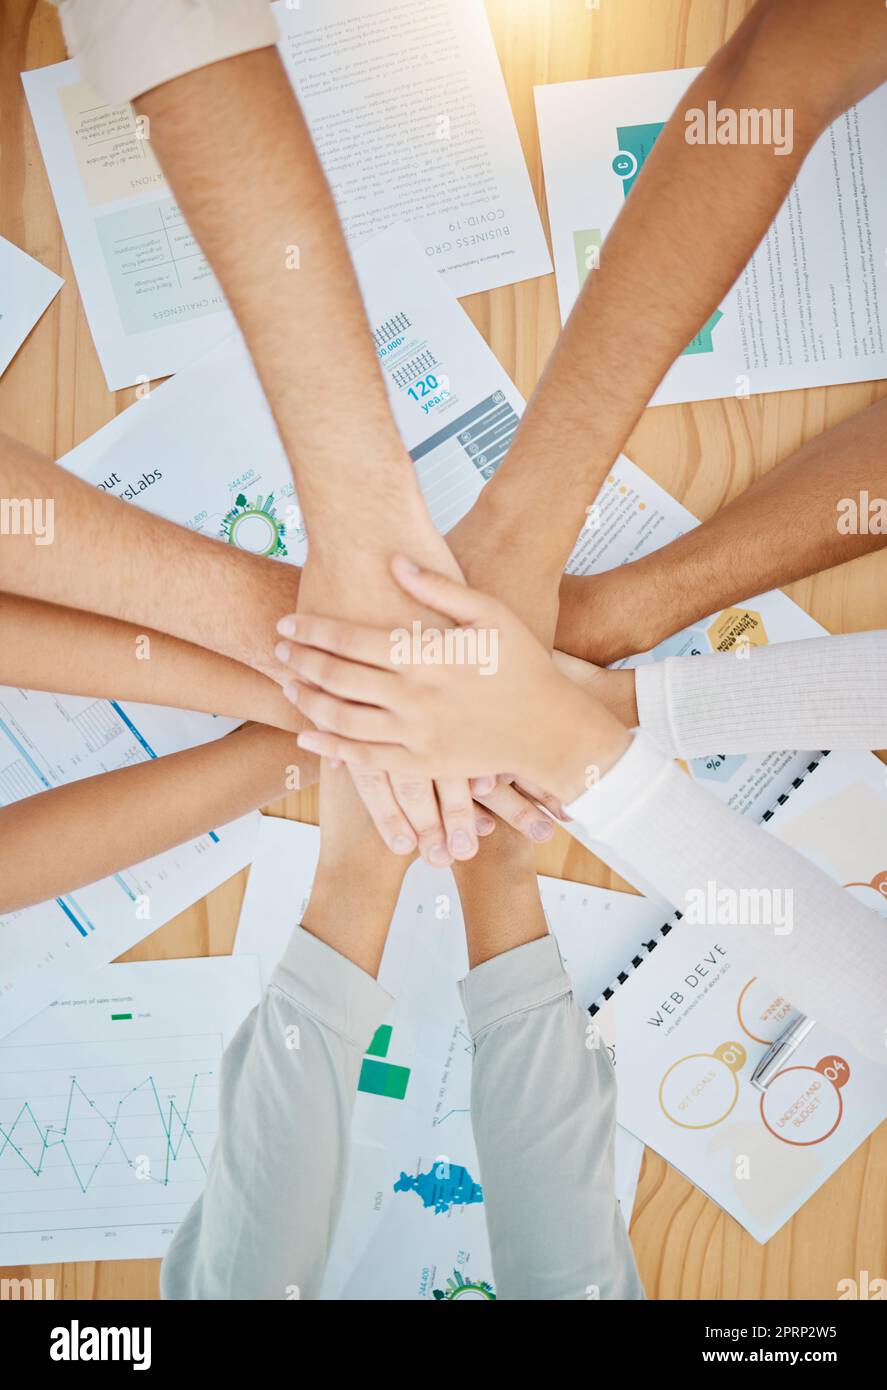 Hand-in-Hand, Teamwork und Unterstützung von Vertrauen in das Business-Team, Community und Zusammenarbeit bei der Arbeit. Motivation, Erfolg und partnerschaftliche Handbewegung der Web Development Group zu einem teambildenden Projekt Stockfoto